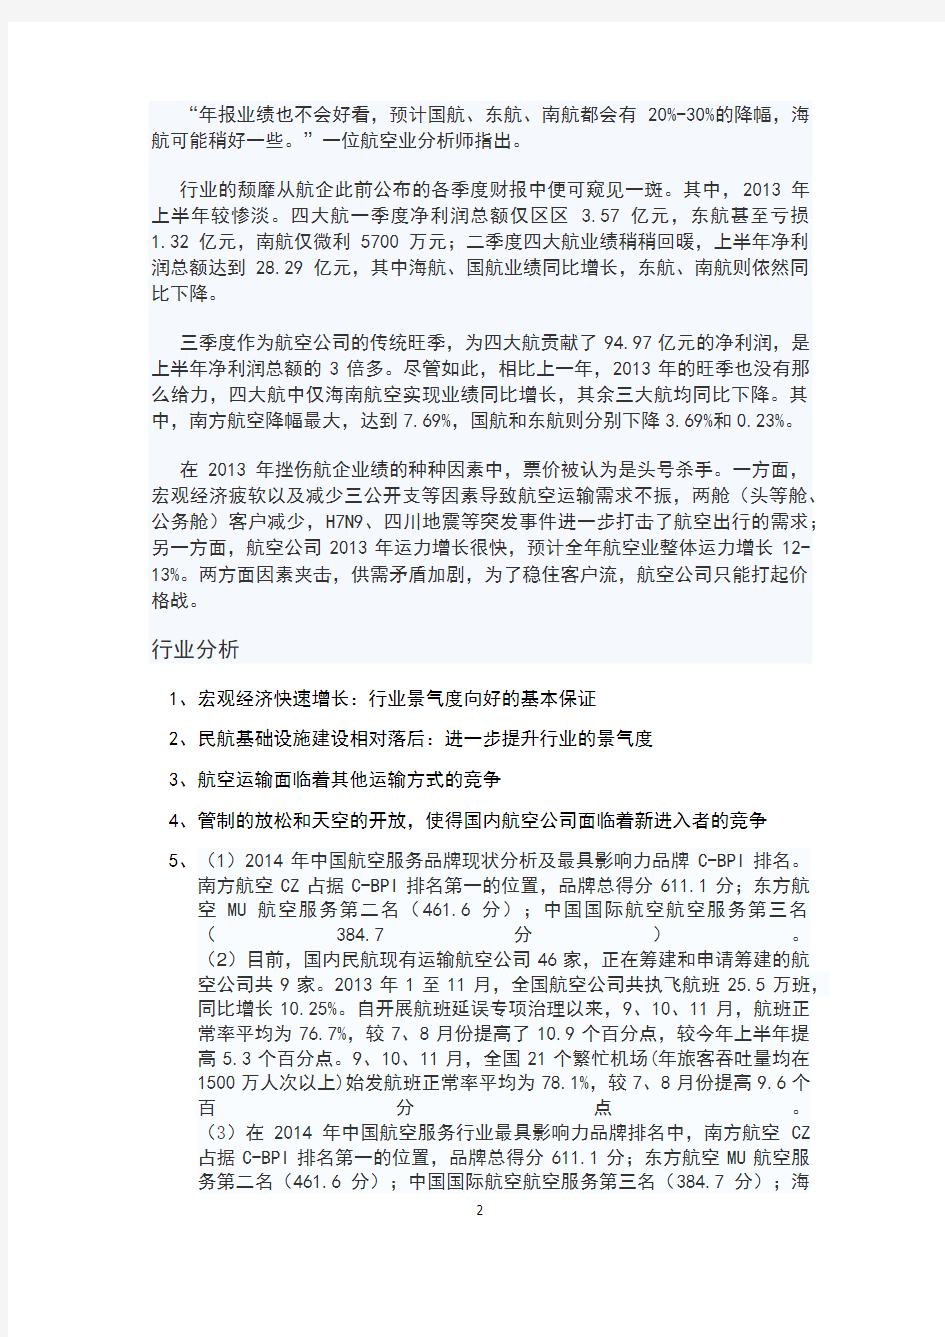 (完整版)中国南方航空公司投资分析报告